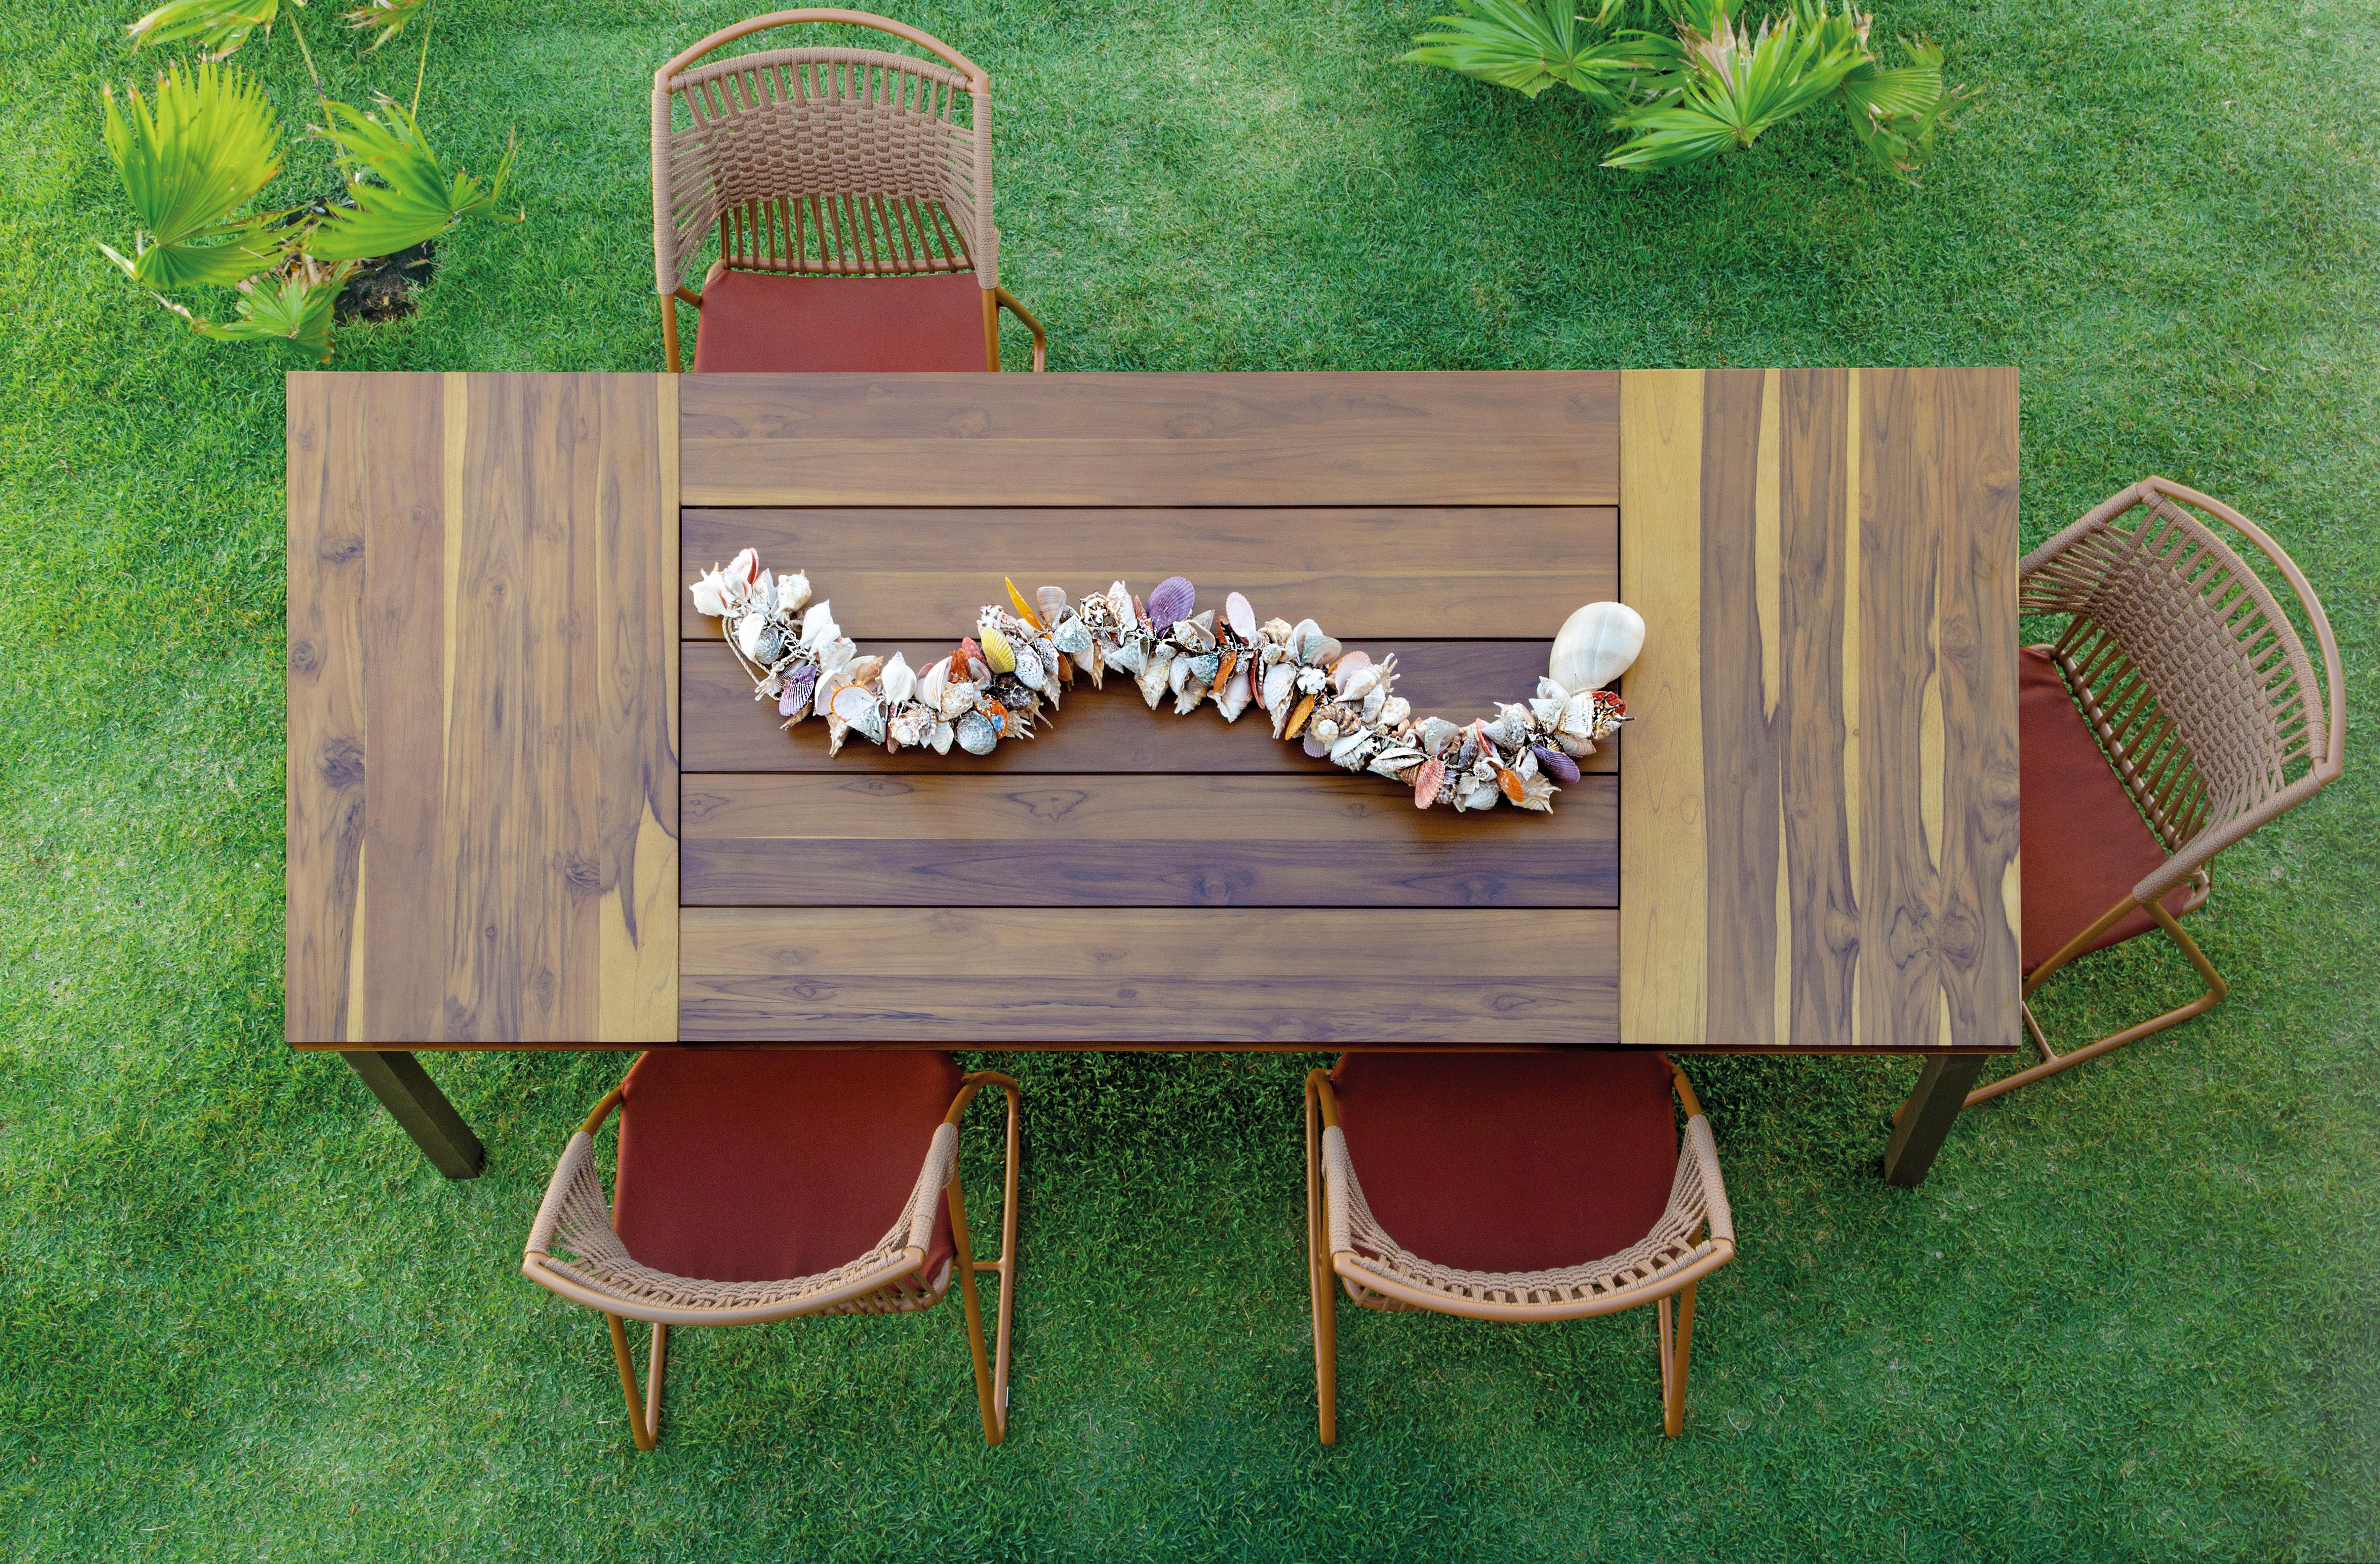 Der Iemanjá Outdoor-Tisch ist aus Aluminiumrohr gefertigt und mit einer hochbeständigen elektrostatischen Lackierung versehen.
Die Farben können an Ihr Projekt angepasst werden. Der Farbkatalog ist riesig. Fordern Sie virtuelle Muster an.
Die Platte